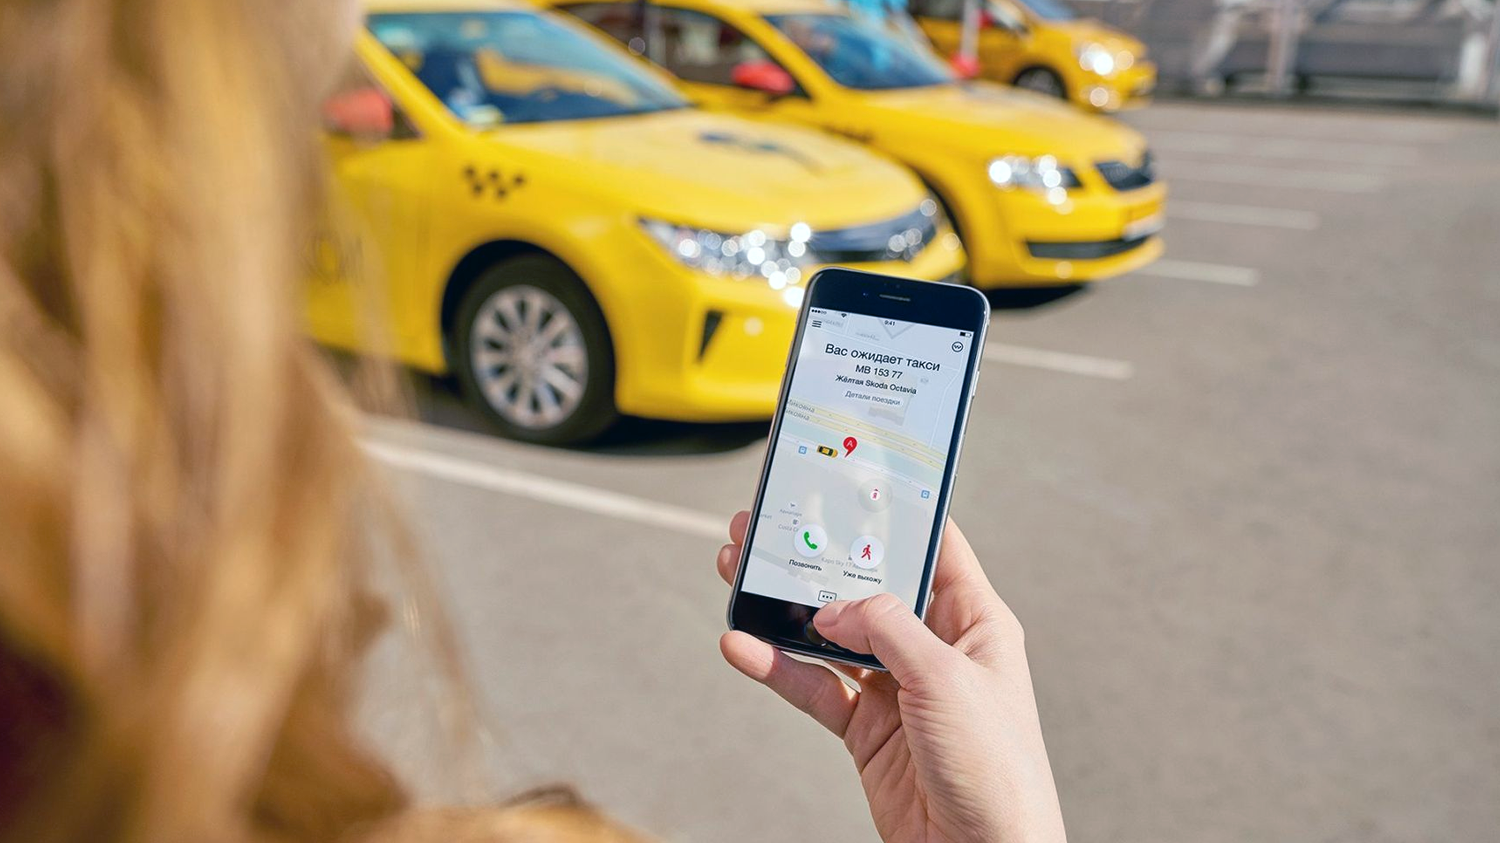 Яндекс адаптировал Такси для незрячих пользователей